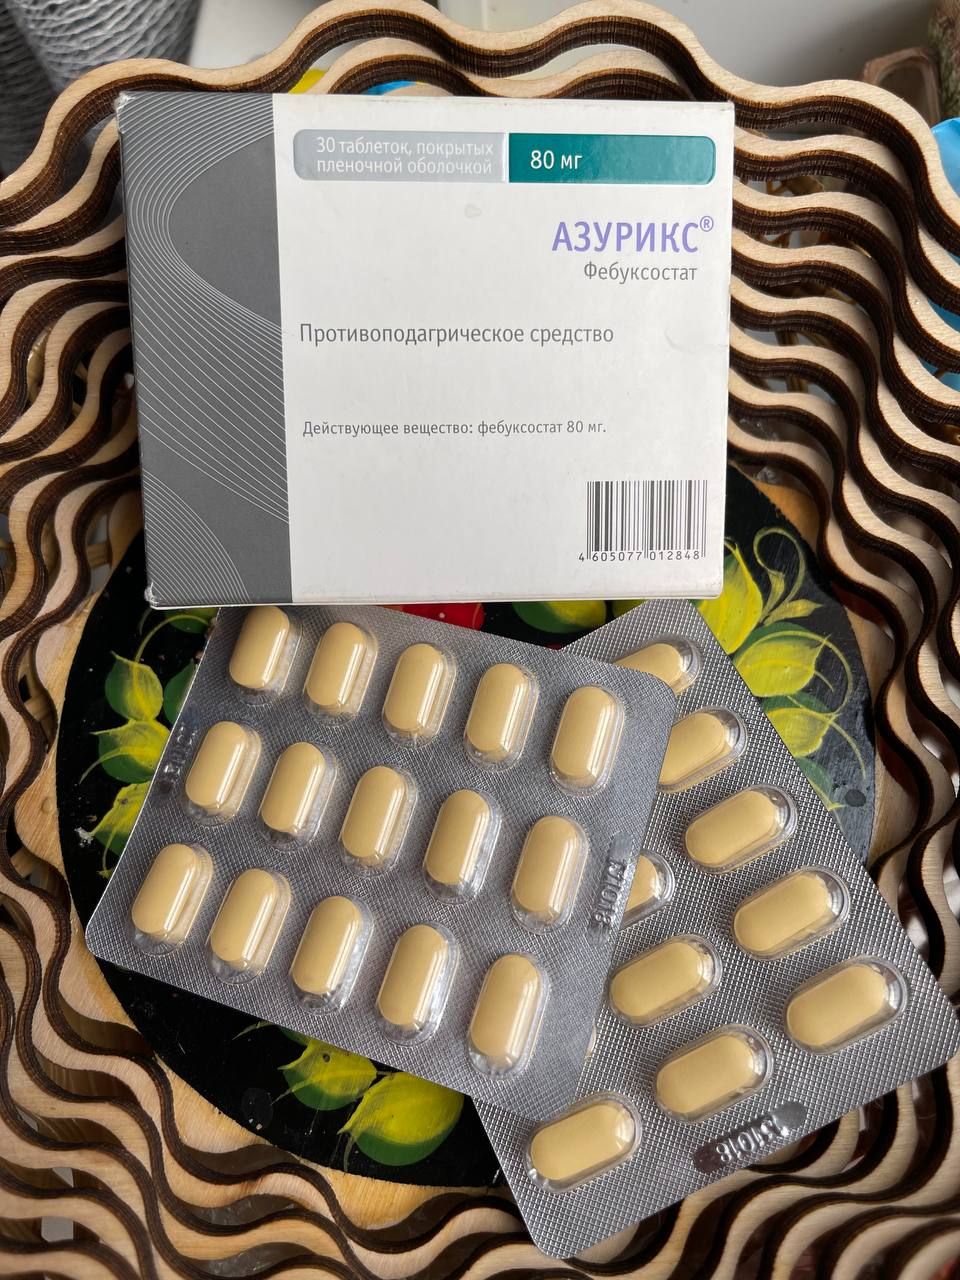 Азурикс - Хороший препарат, рекомендую, если вам его назначил врач